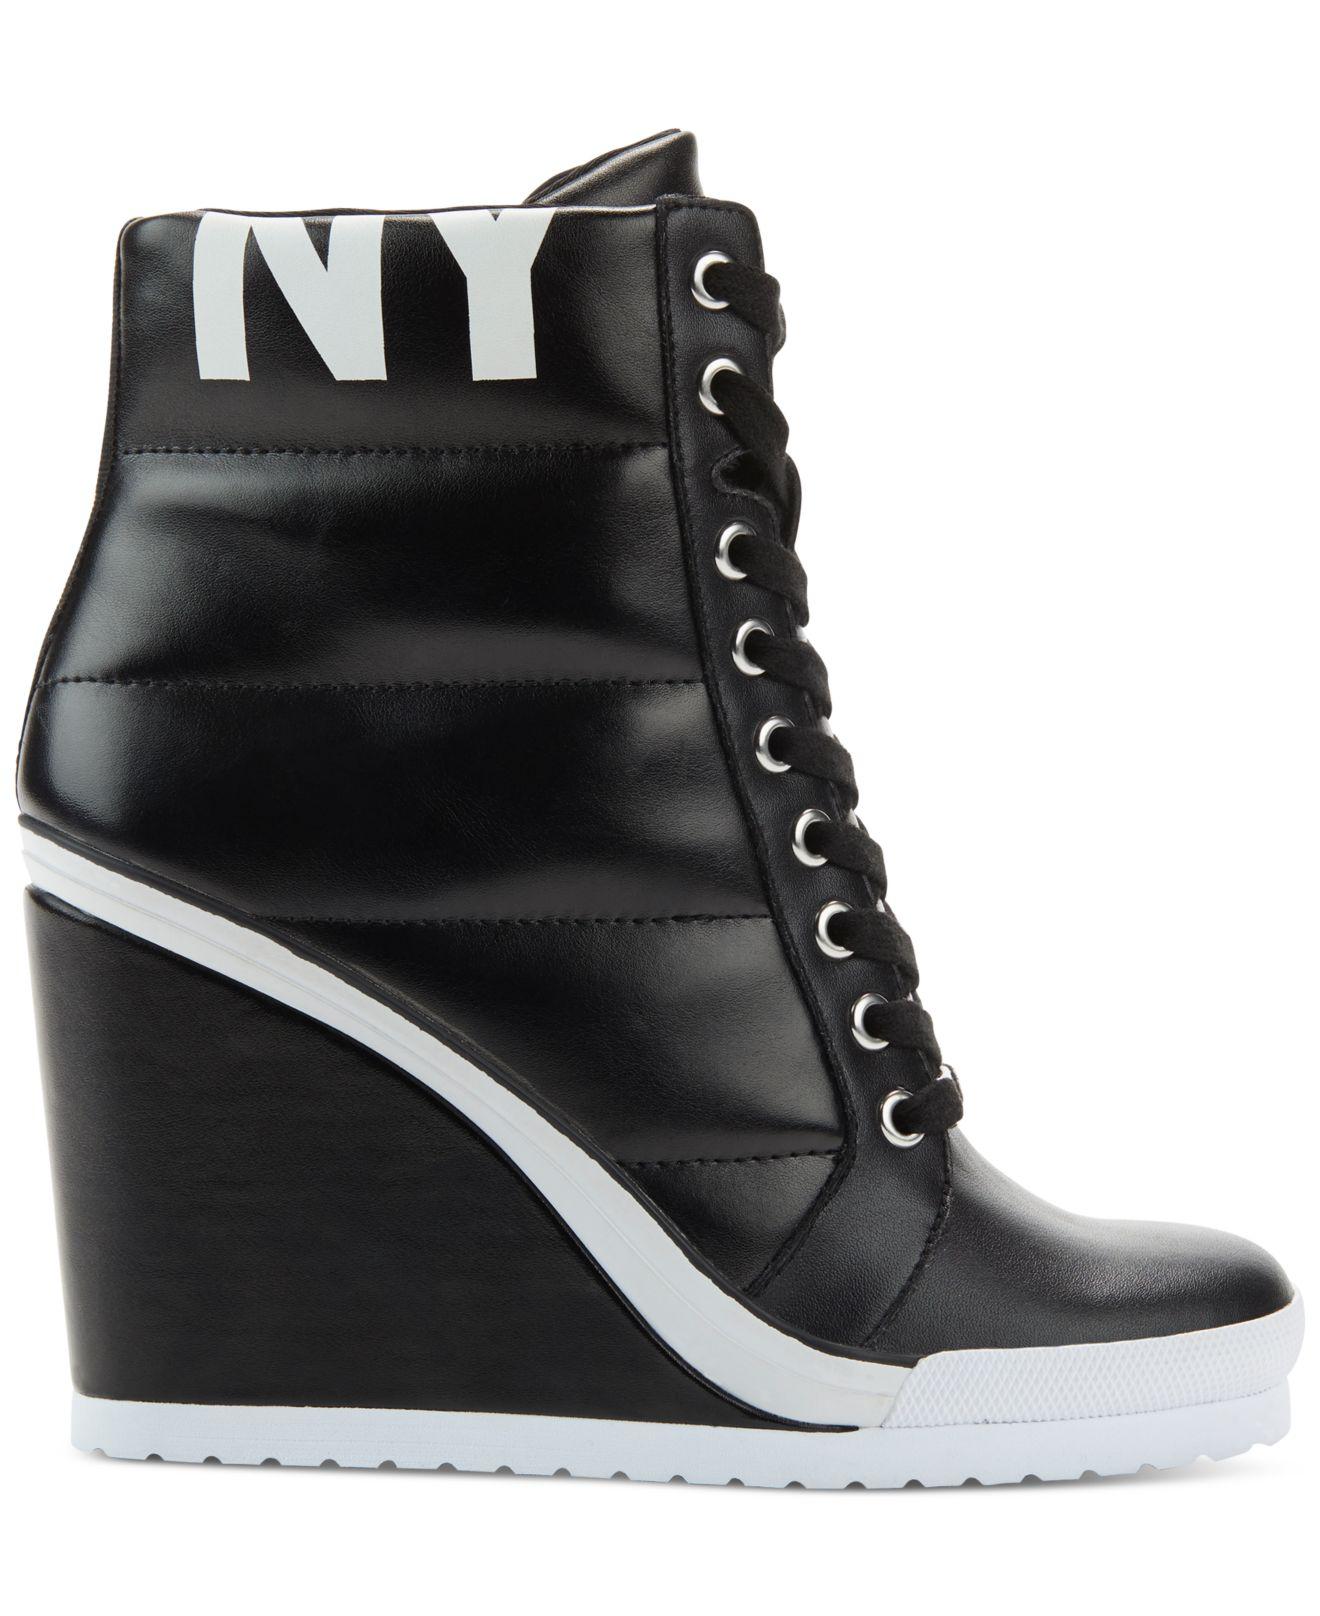 DKNY Noho Wedge Sneakers in Black | Lyst